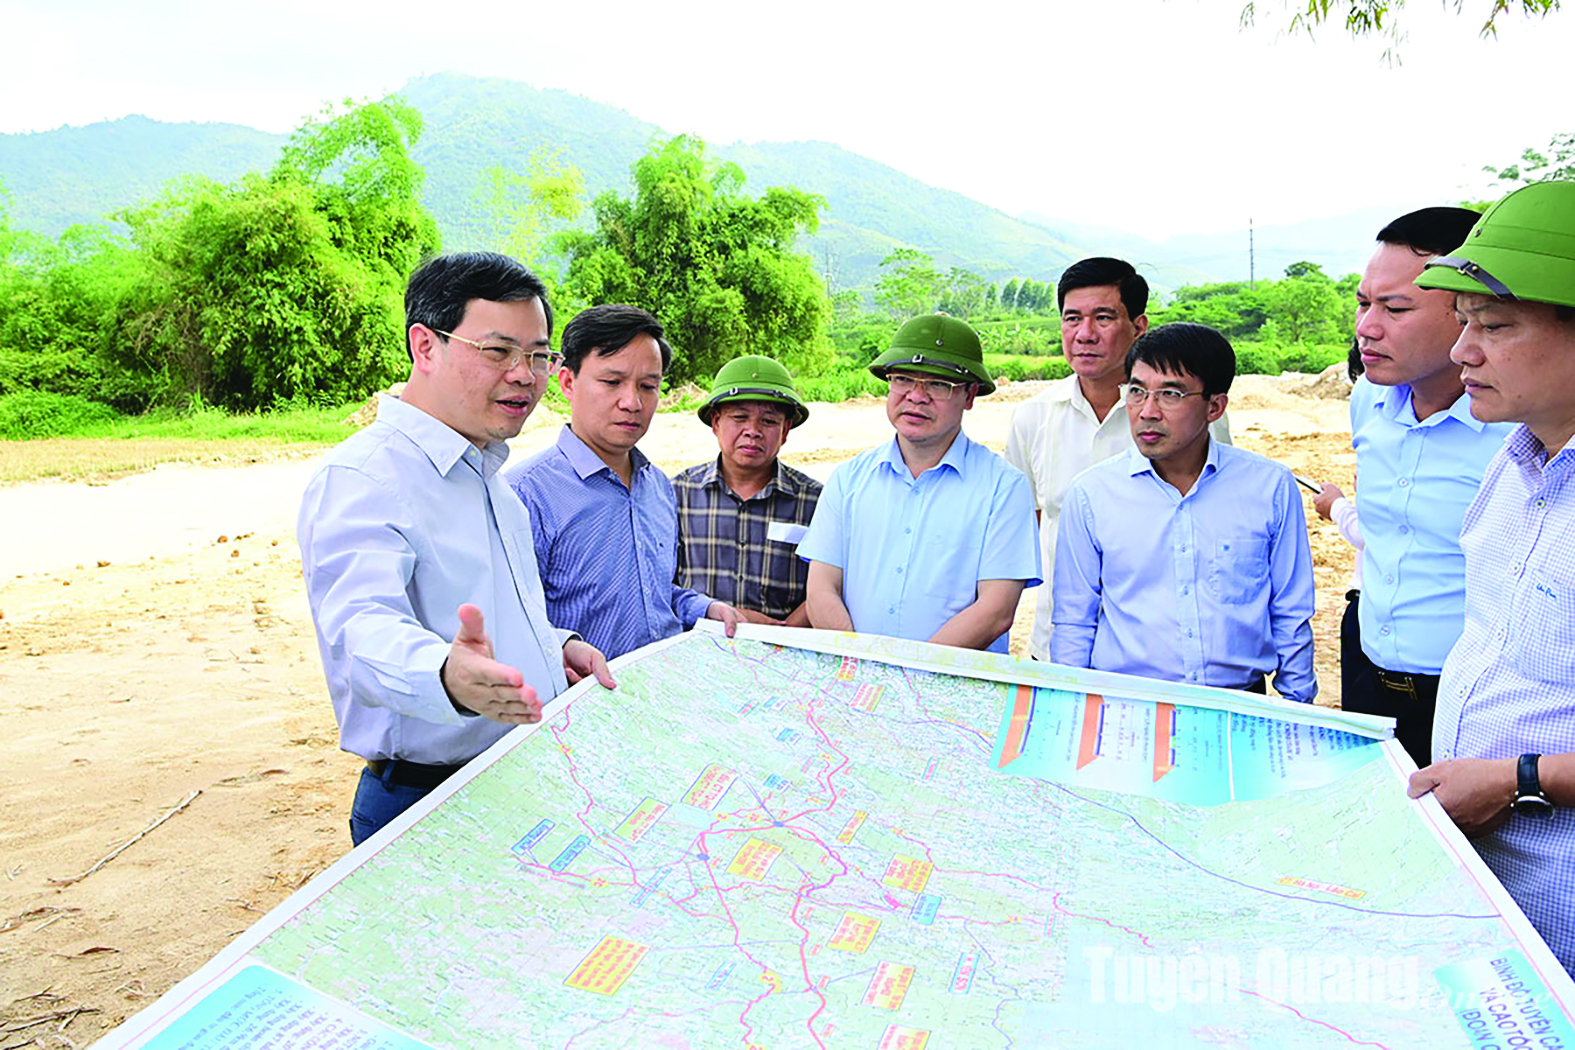  Chủ tịch UBND tỉnh Tuyên Quang Nguyễn Văn Sơn kiểm tra công trường thi công đường từ Khu du lịch Suối khoáng Mỹ Lâm đến Quốc lộ 2D kết nối với đường cao tốc Tuyên Quang - Phú Thọ.